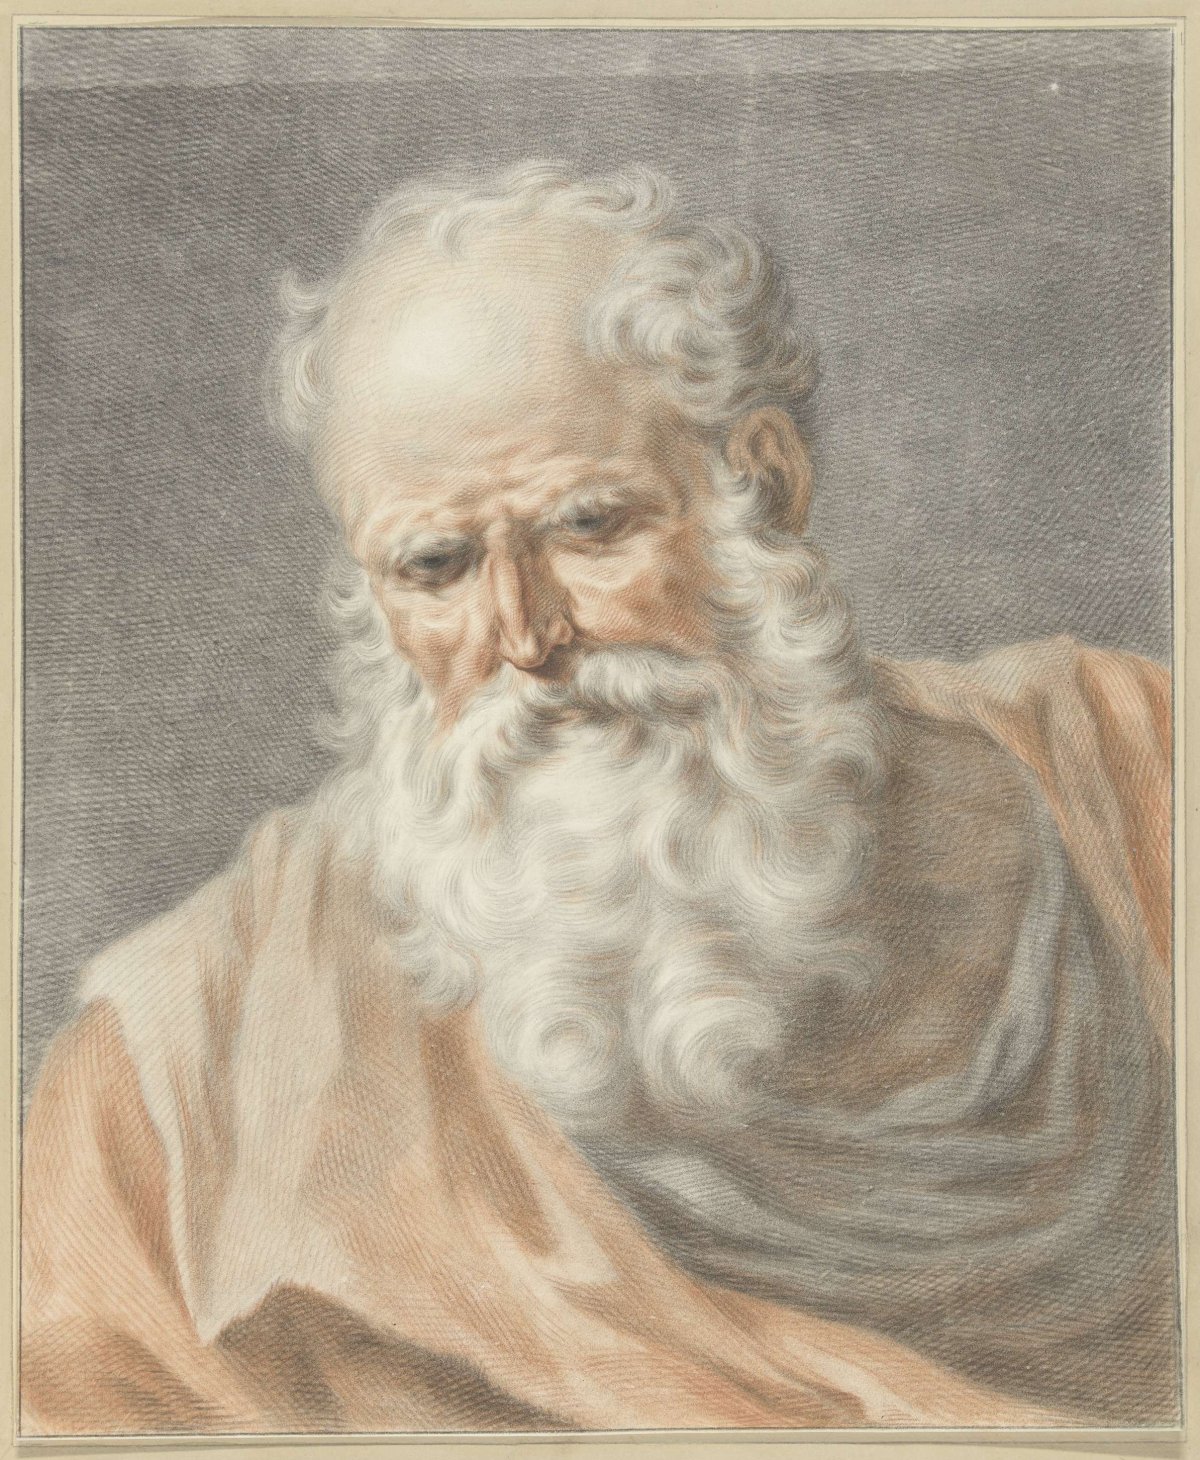 Oude man, Abraham Delfos, 1741 - 1820